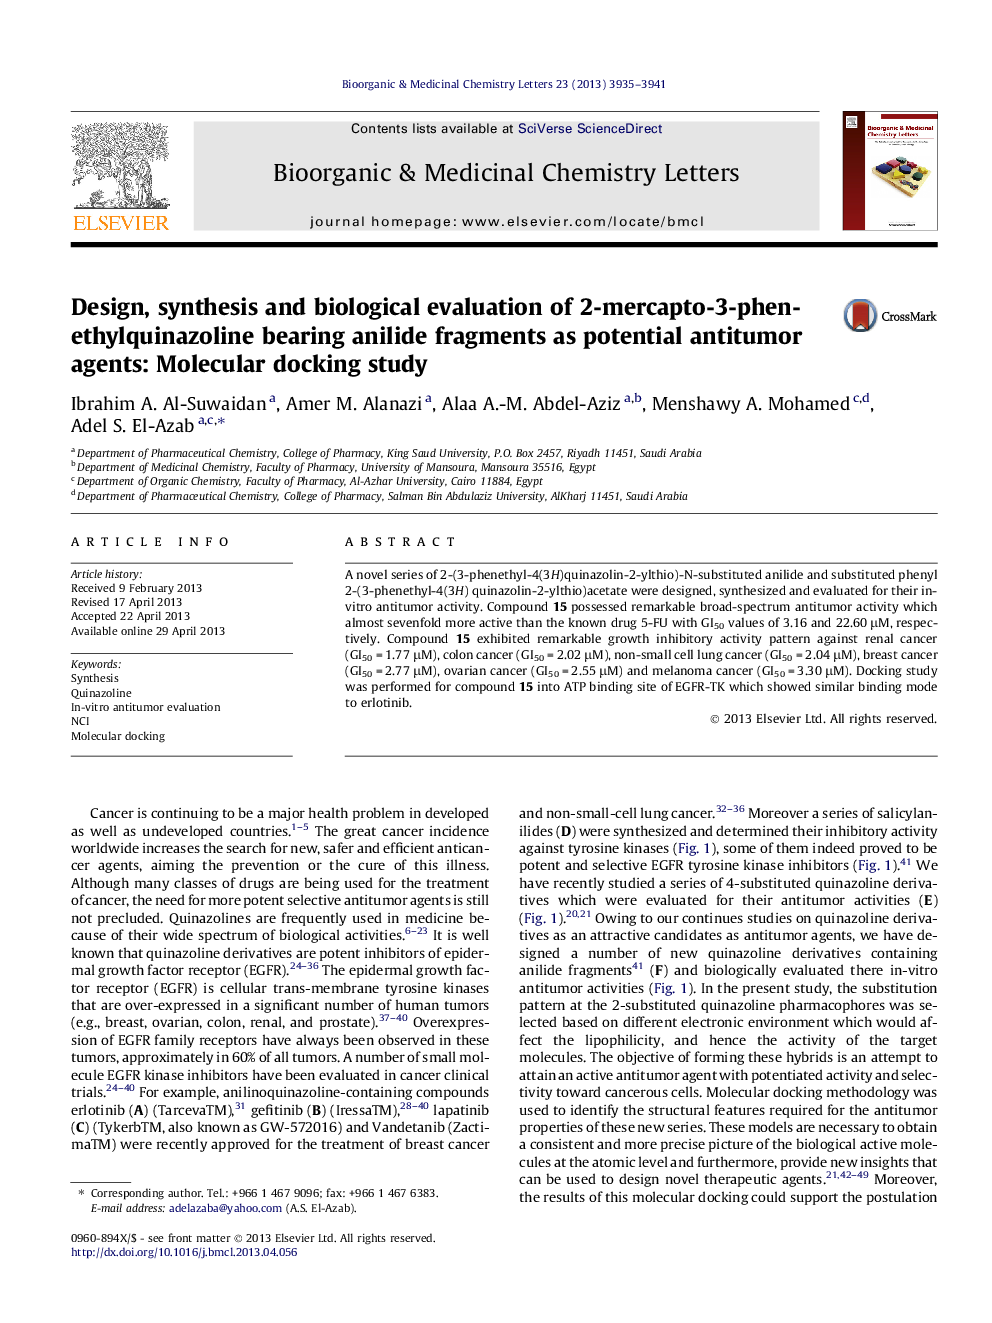 طراحی، سنتز و ارزیابی بیولوژیکی قطعات آنیلید حاوی 2-مری کپتو-3-فنتئیلو کینازولین به عنوان عوامل ضد توموری بالقوه: مطالعه اتصال دائمی مولکولی 